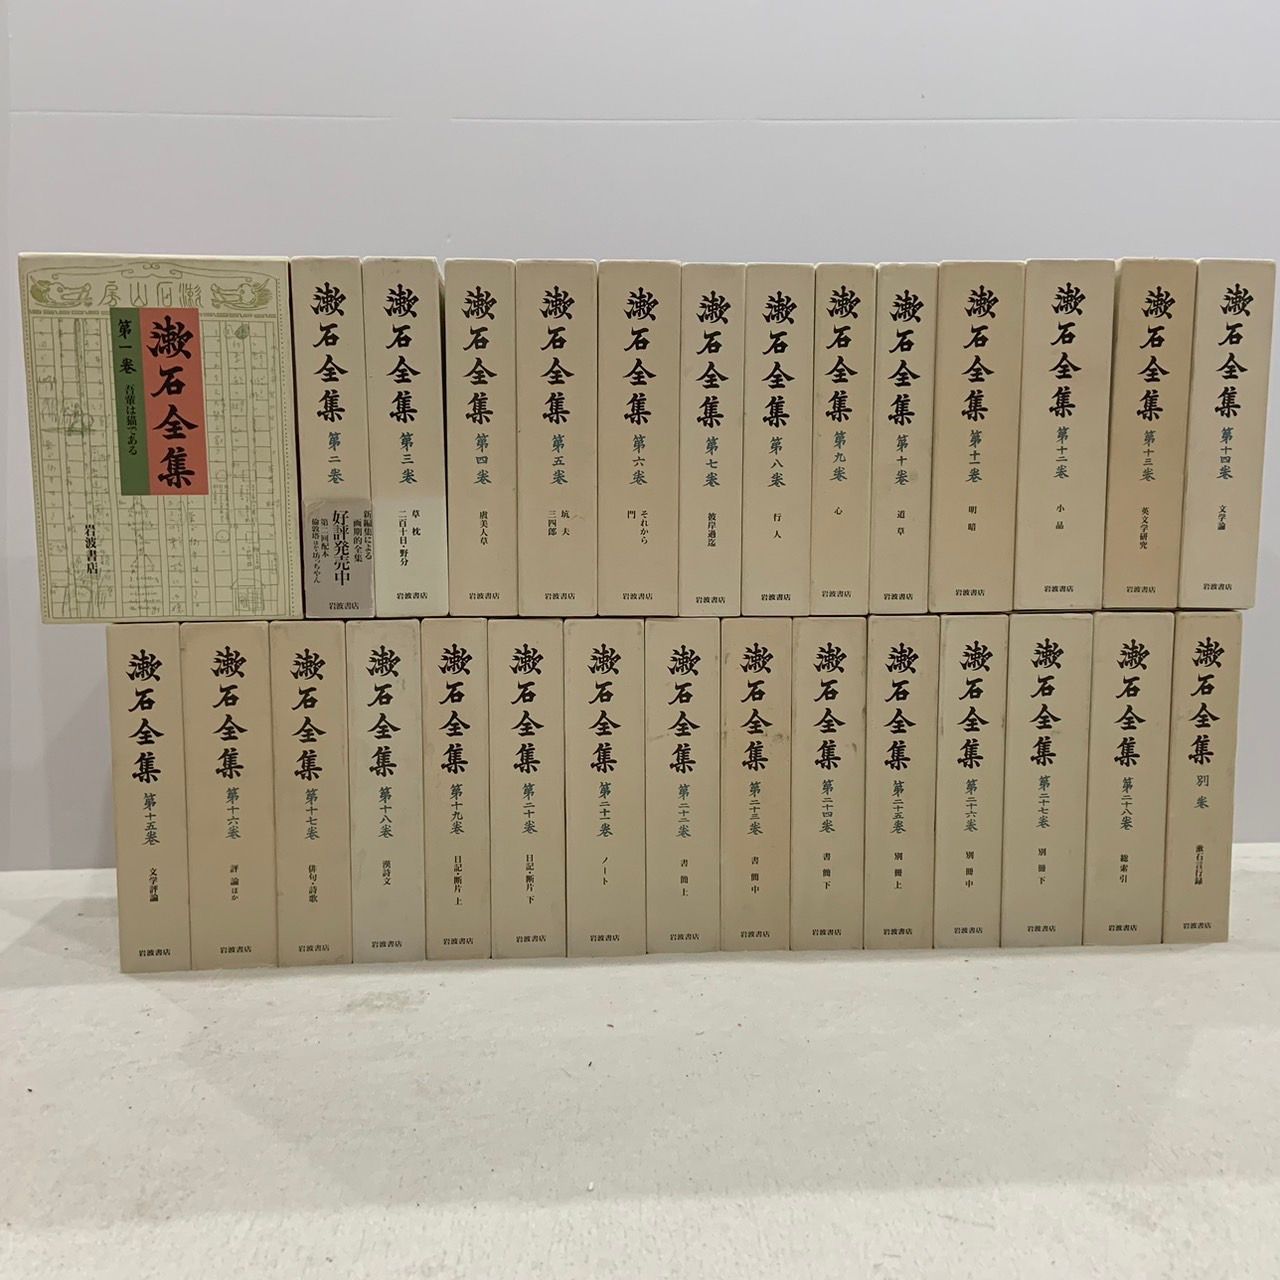 定本　漱石全集　全28巻＋別冊1巻＋私の漱石1巻夏目漱石